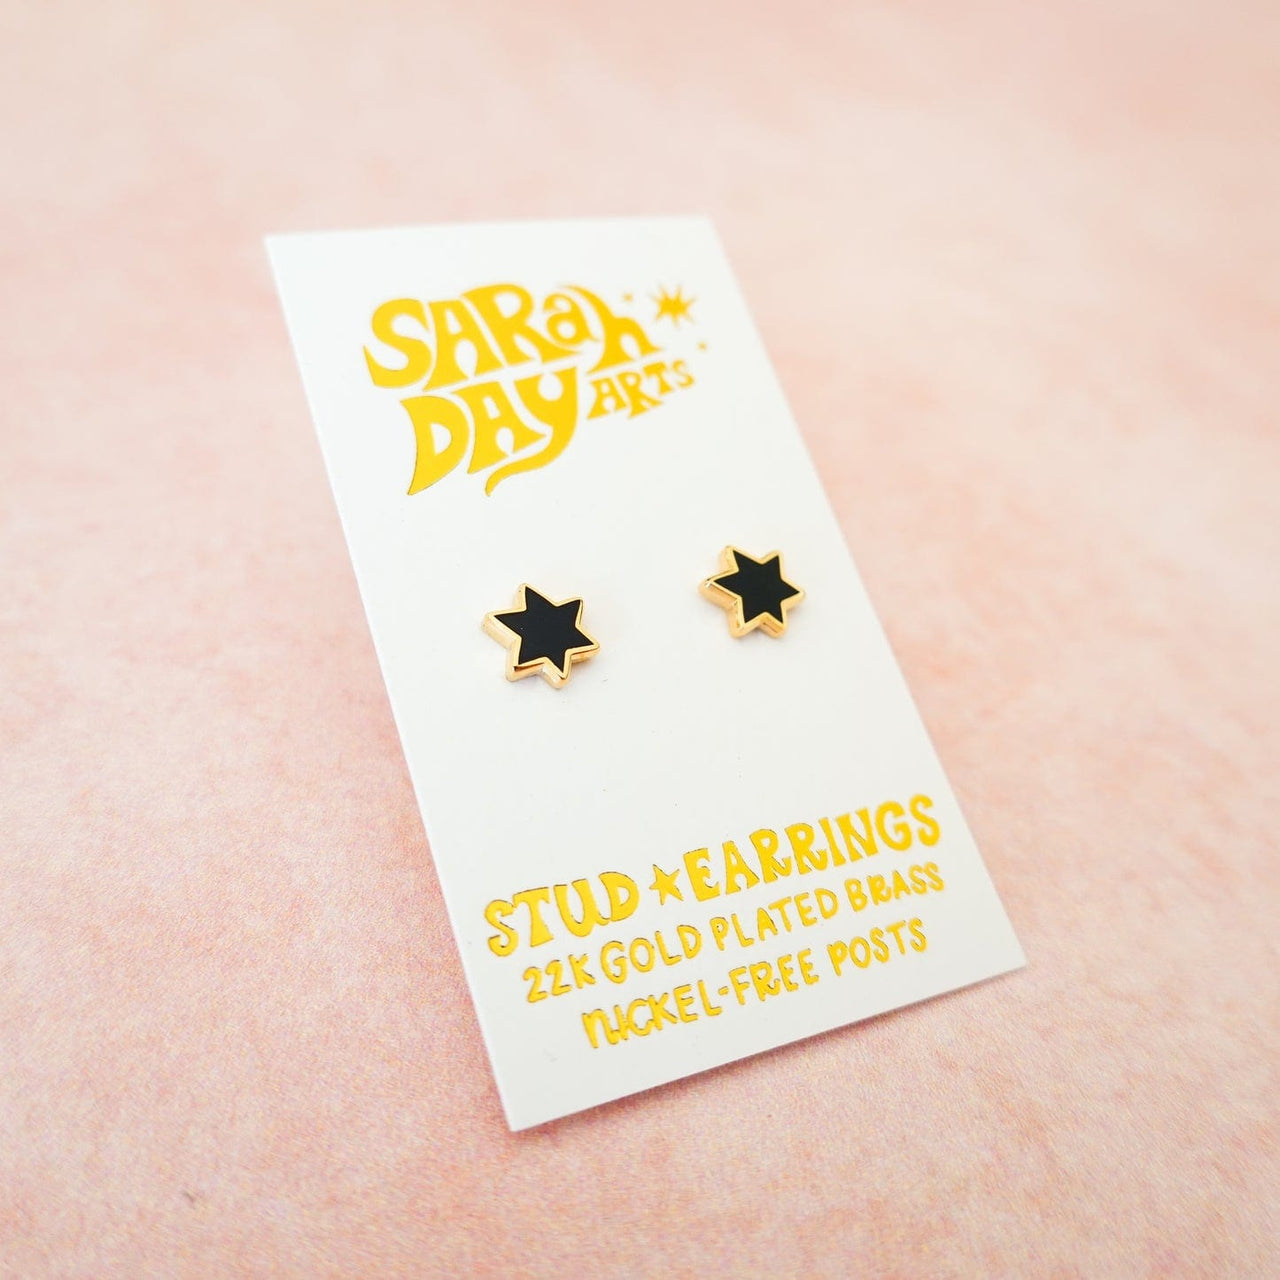 Sarah Day Arts Earrings Mini Magen David Stud Earrings - Black